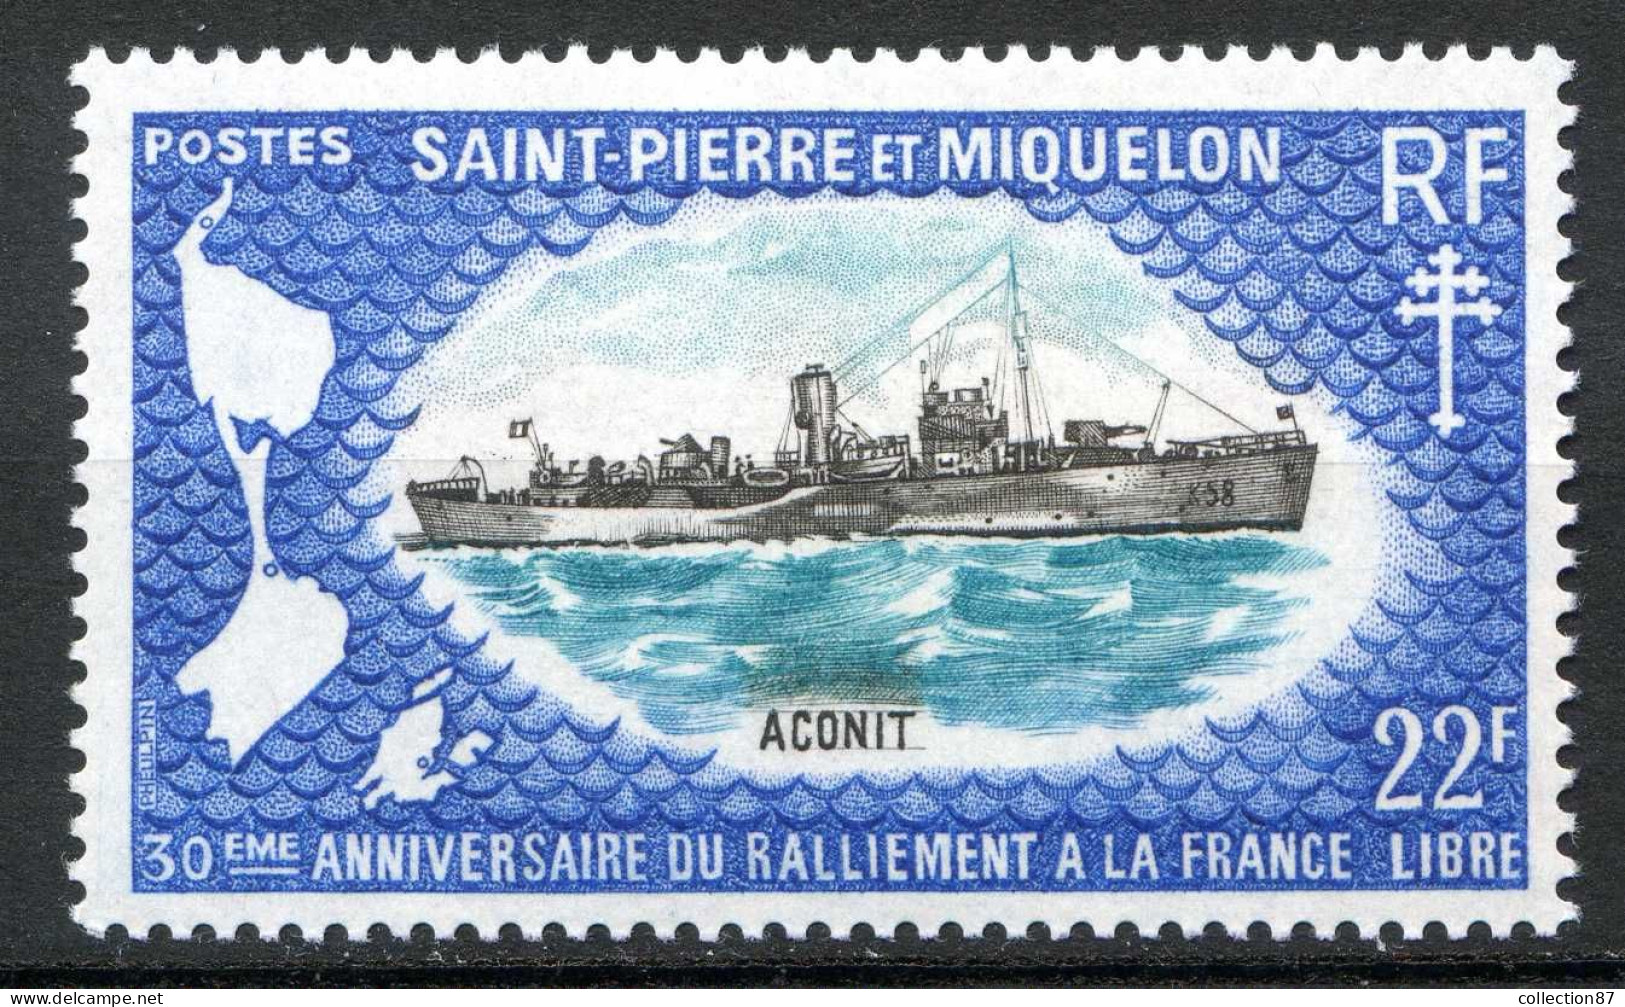 Réf 085 > SAINT PIERRE Et MIQUELON < N° 414 * < Neuf Ch -- MH * --- > Bateau Aconit - Unused Stamps